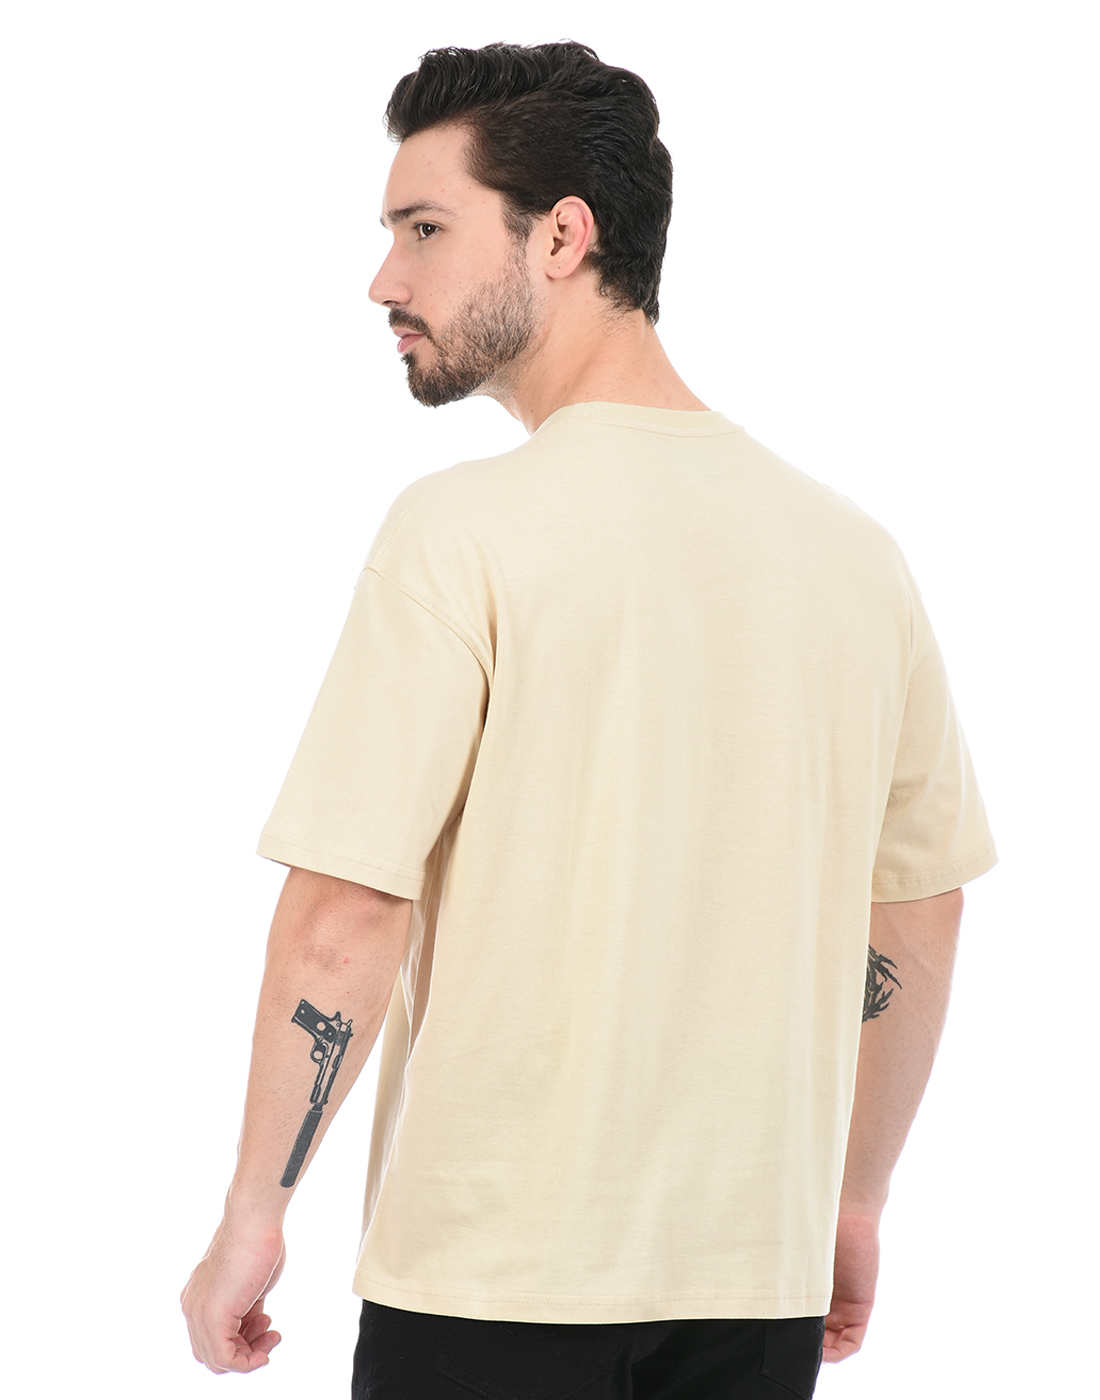 Oneway Unisex Solid Beige T-Shirt